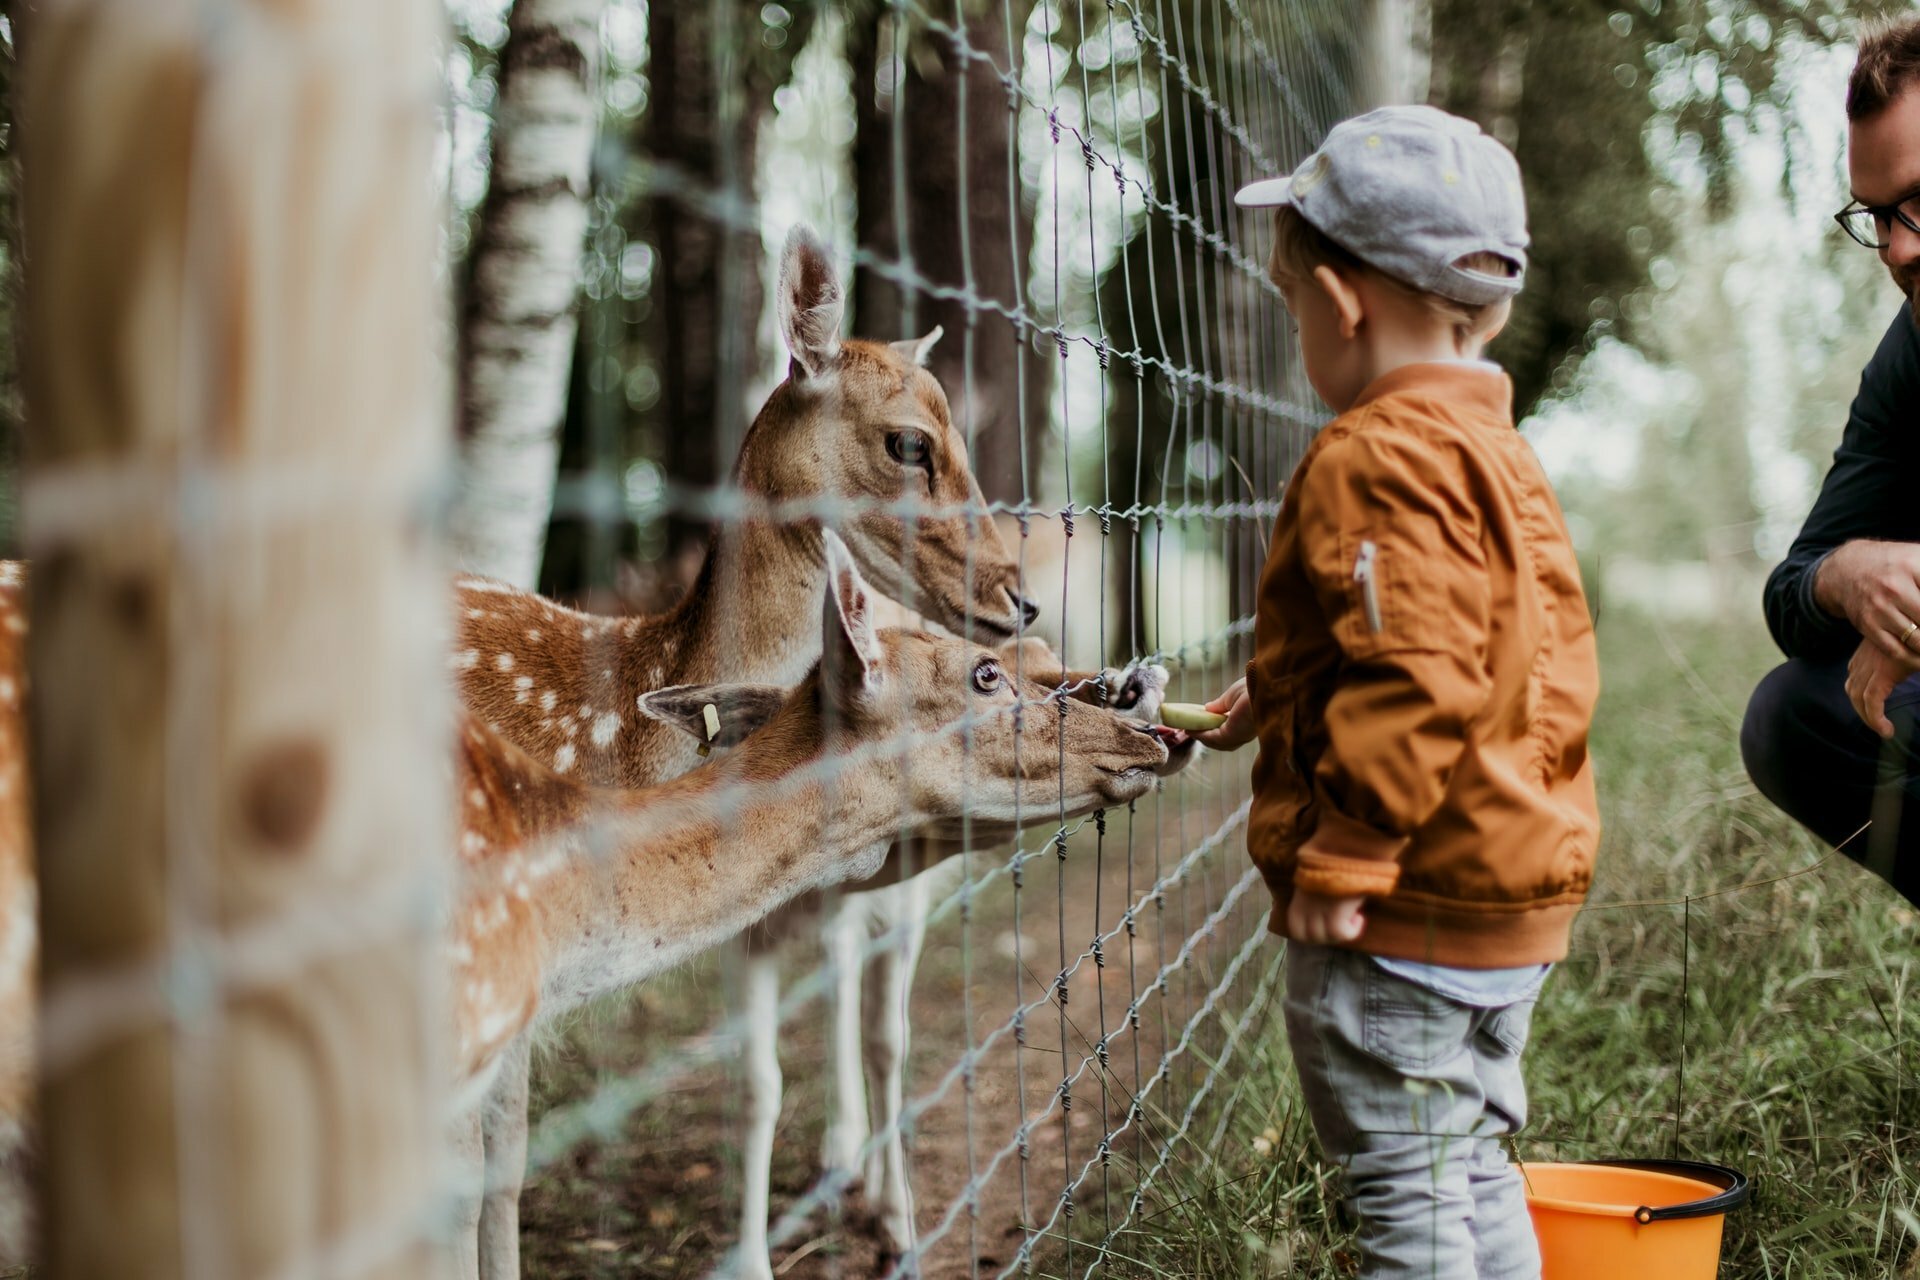 a child feeding giraffes